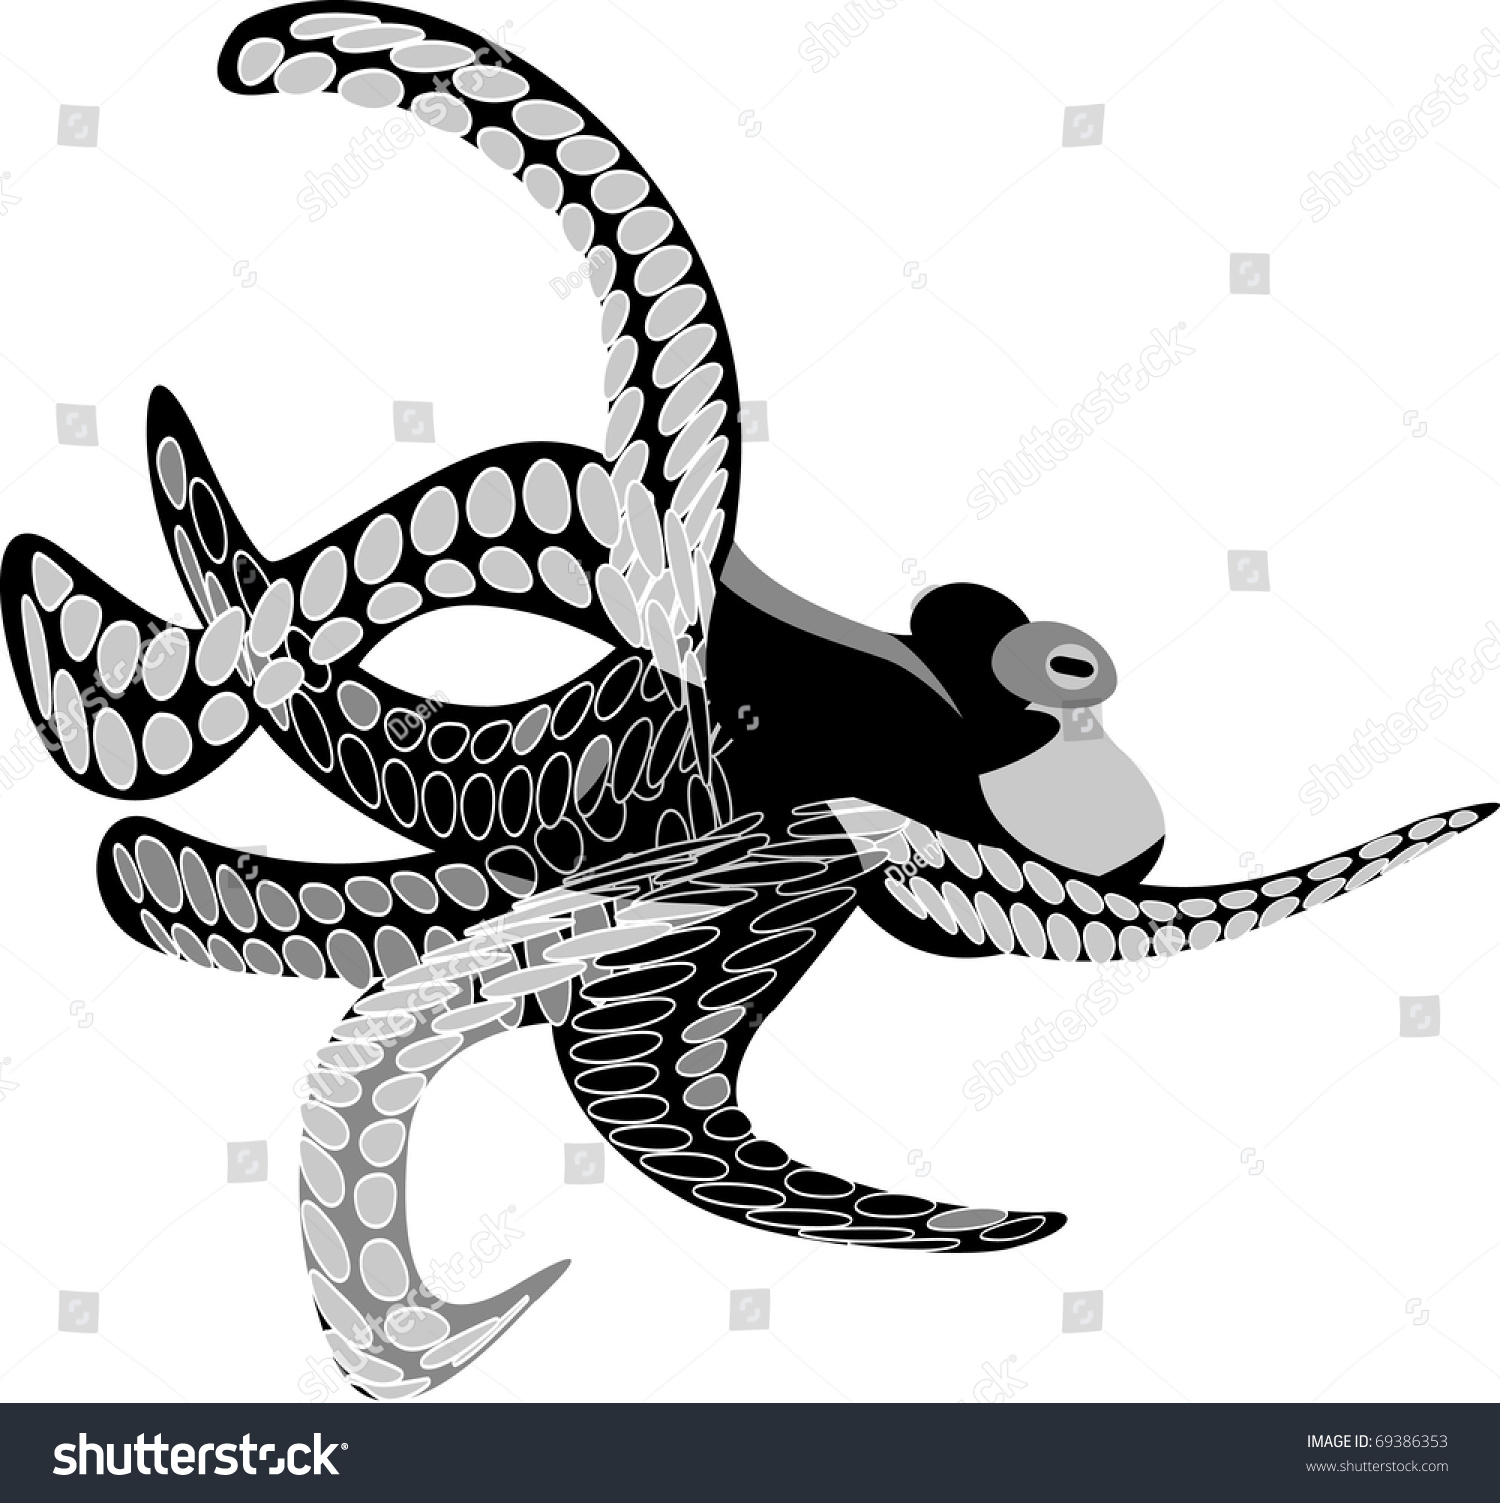 Octopus Black White Printing: vector de stock (libre de regalías